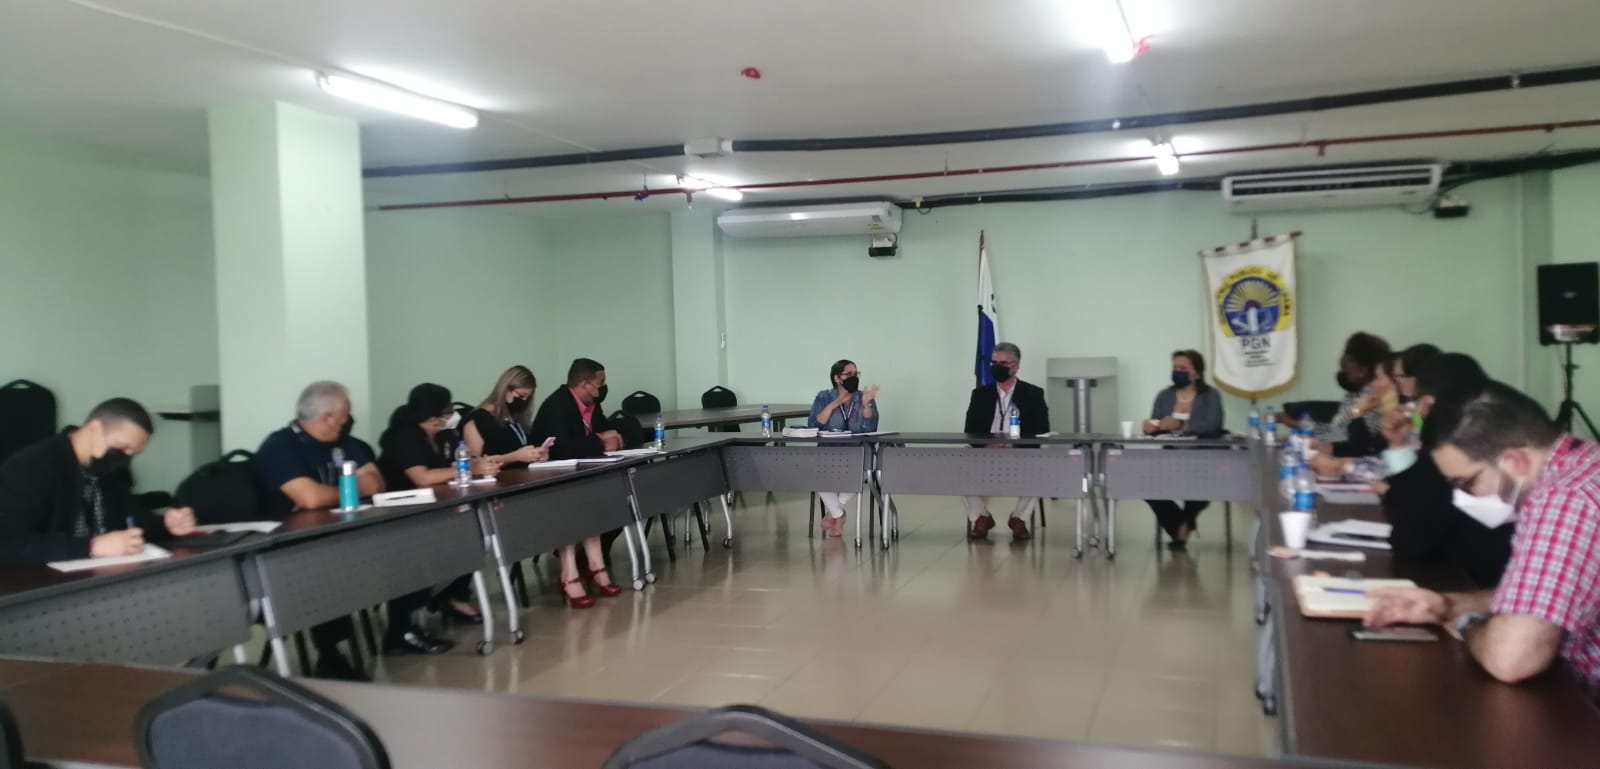 Ministerio Publico se reúne con autoridades del Órgano judicial para la creación de un centro de procedimientos alternos de solución de conflictos en Panamá Oeste